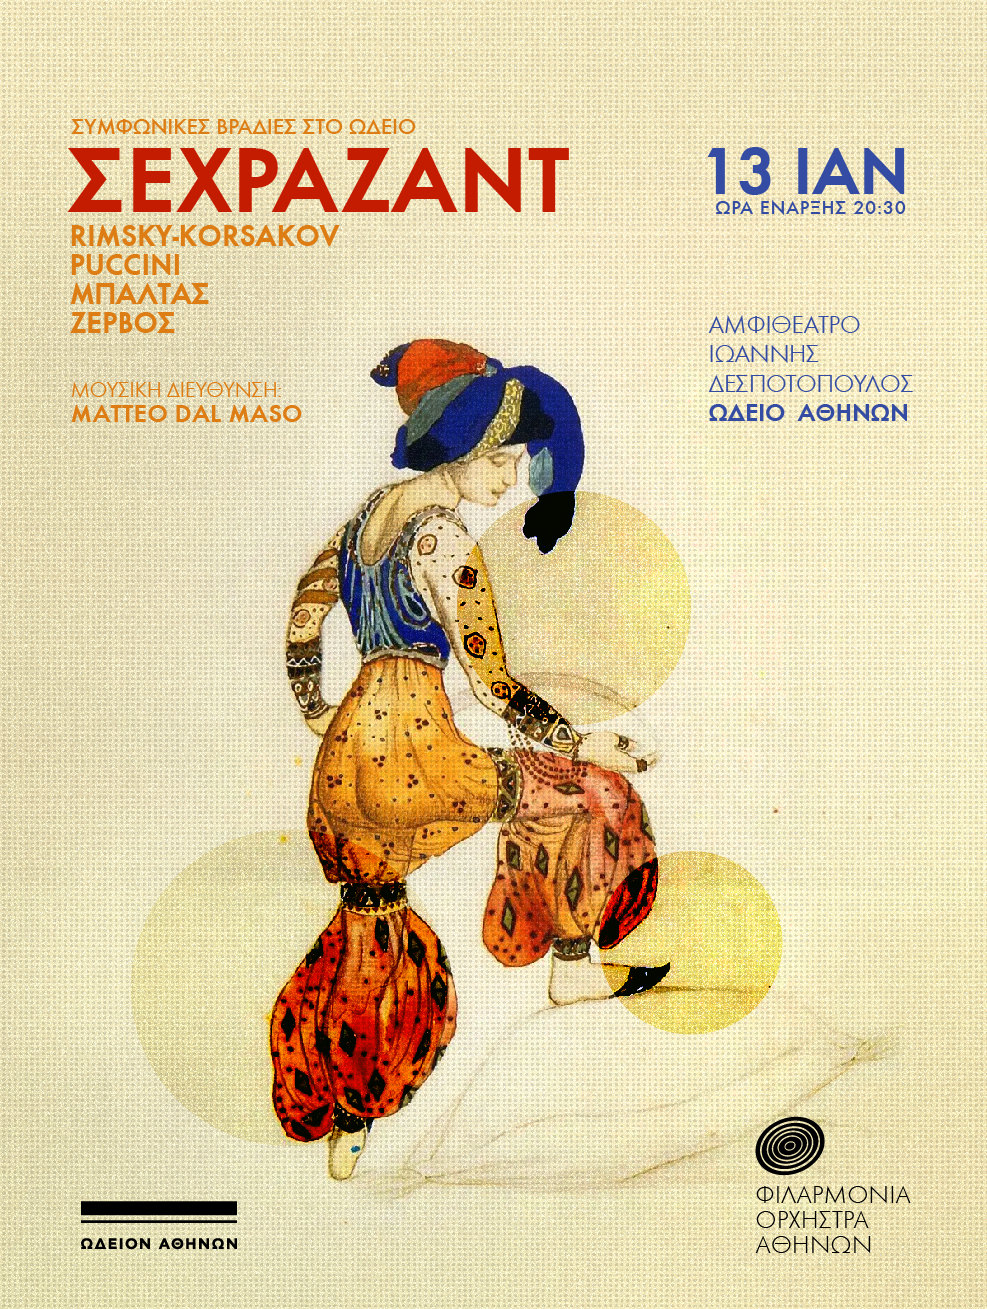 «Σεχραζάντ» με τη Φιλαρμόνια Ορχήστρα Αθηνών στις 13 Γενάρη στο Ωδείο Αθηνών